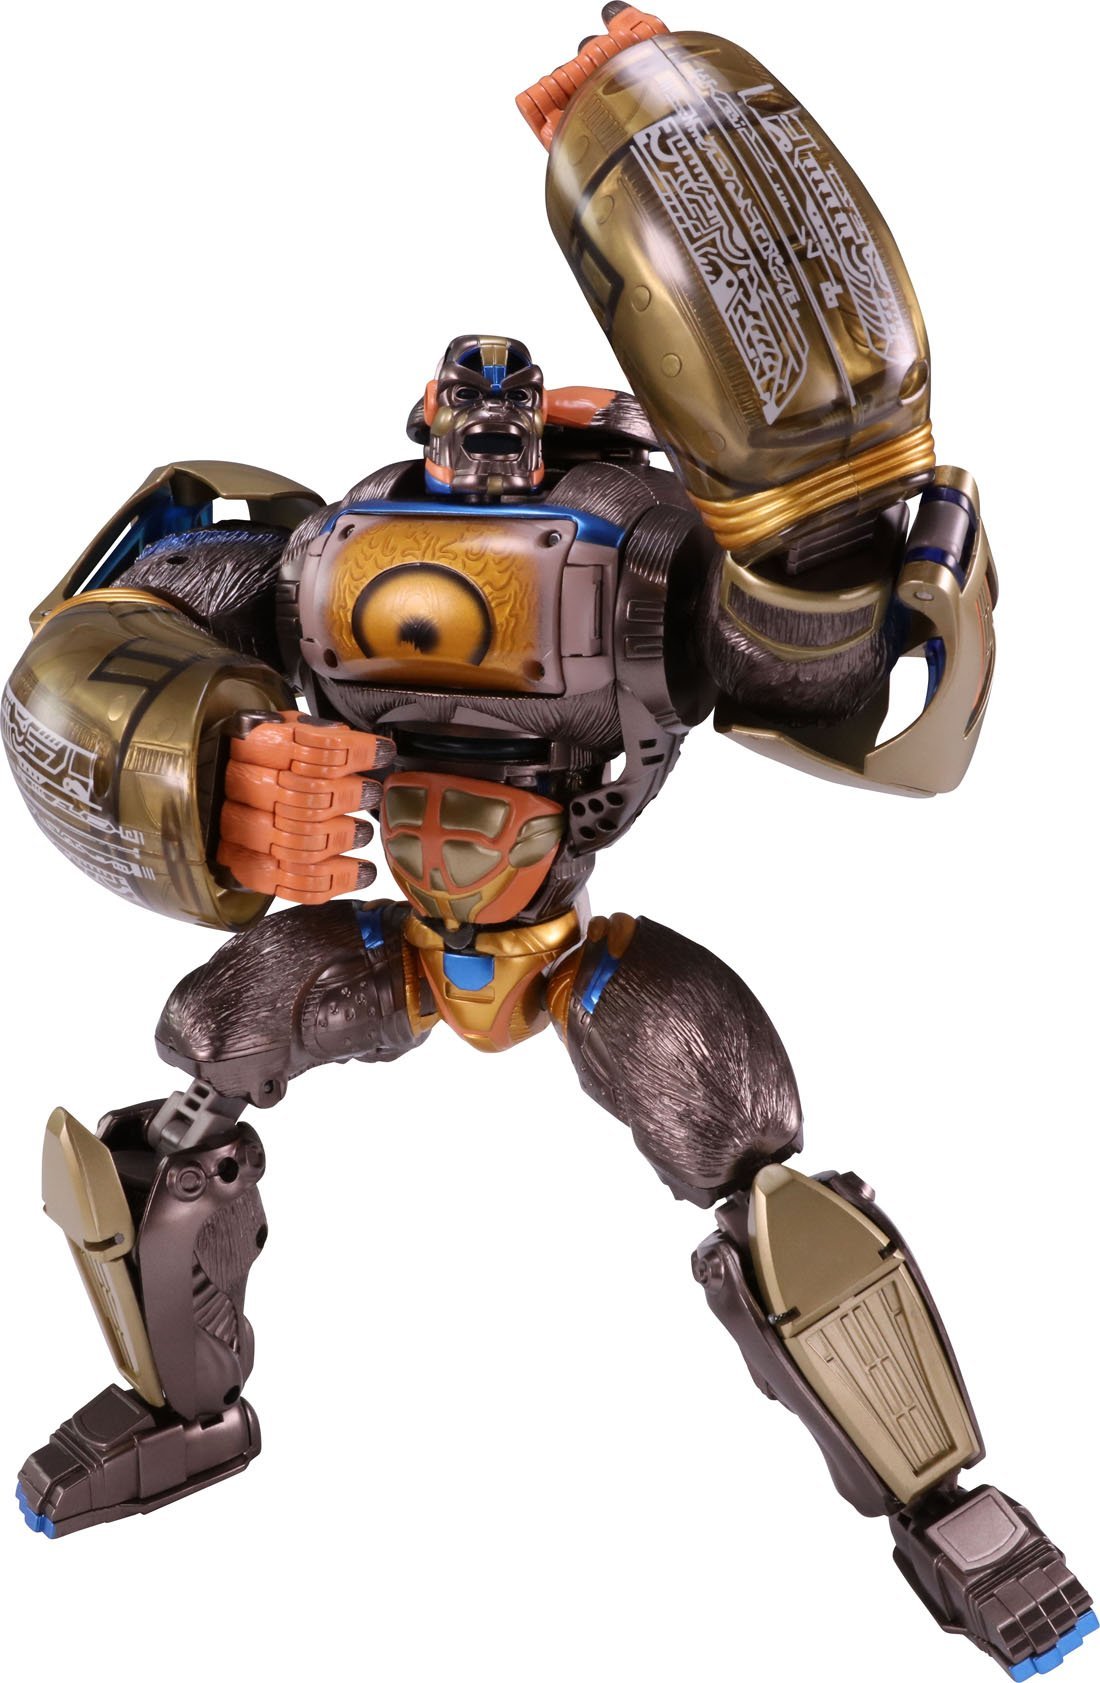 TakaraTomy - Transformers Encore - Beast Machines - Optimus Primal (Beast Wars Convoy) - Marvelous Toys